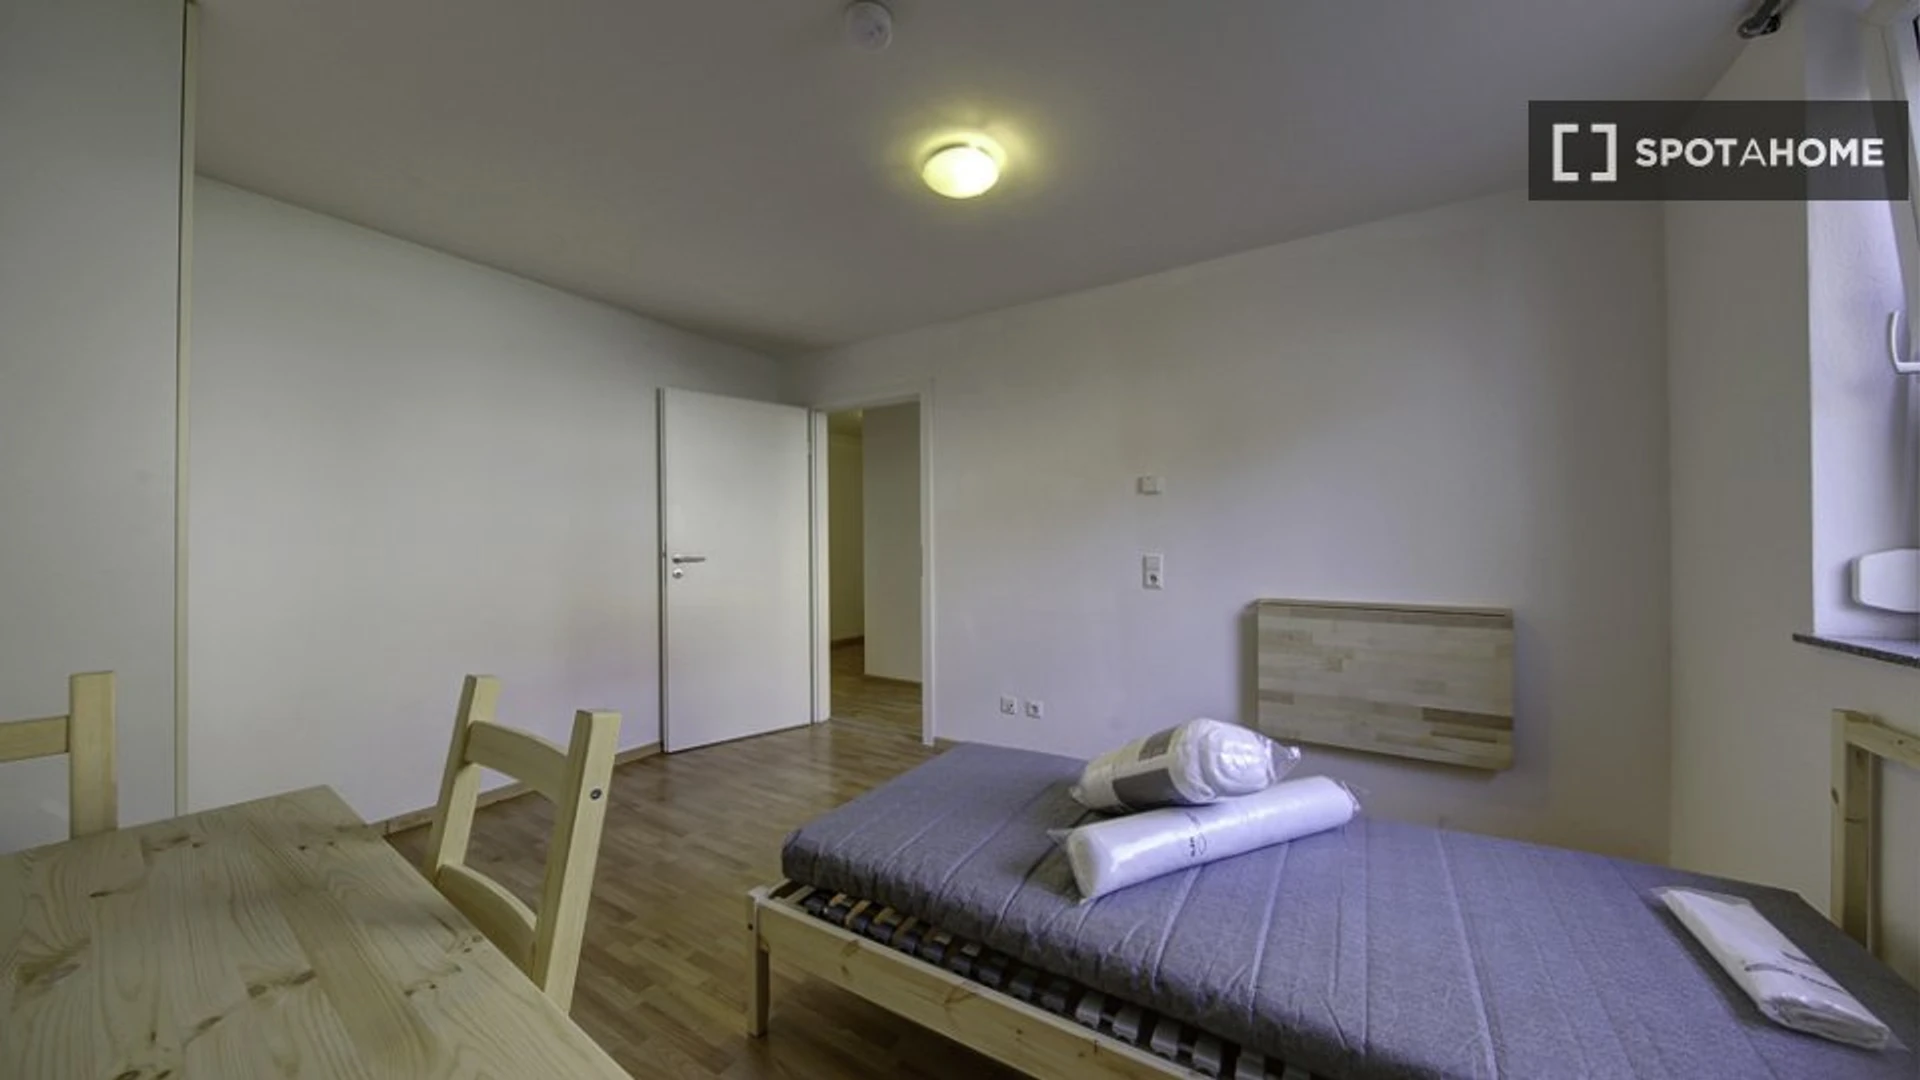 Pokój do wynajęcia z podwójnym łóżkiem w Stuttgart